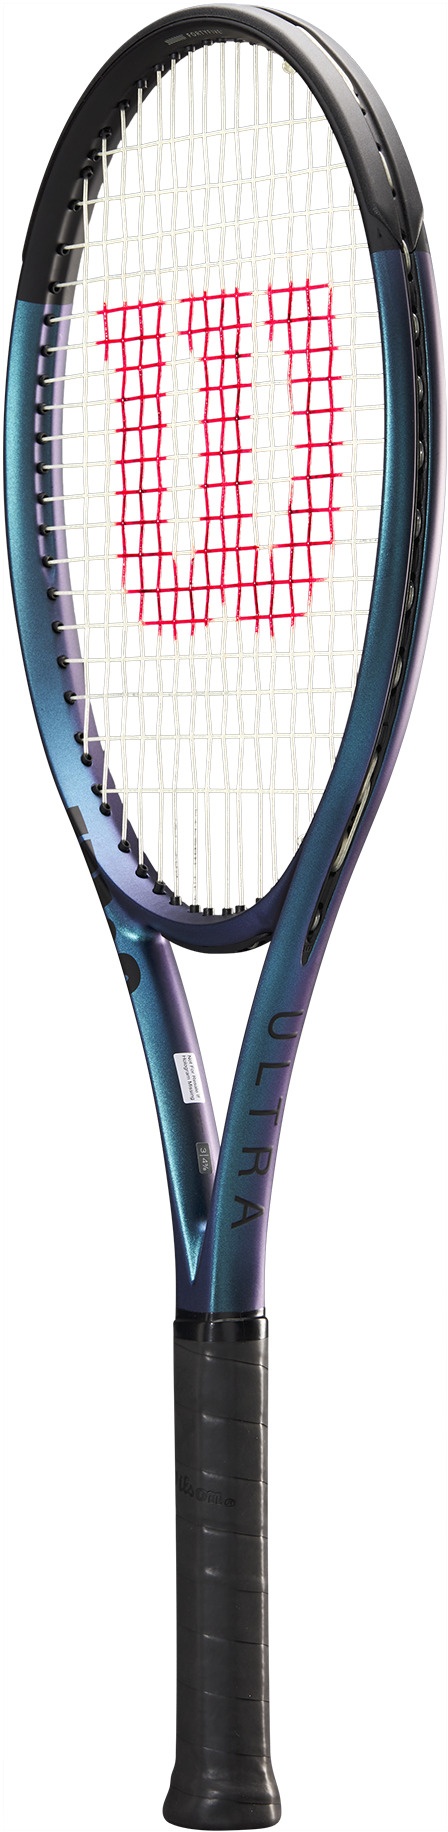 Rachetă de tenis de performanță